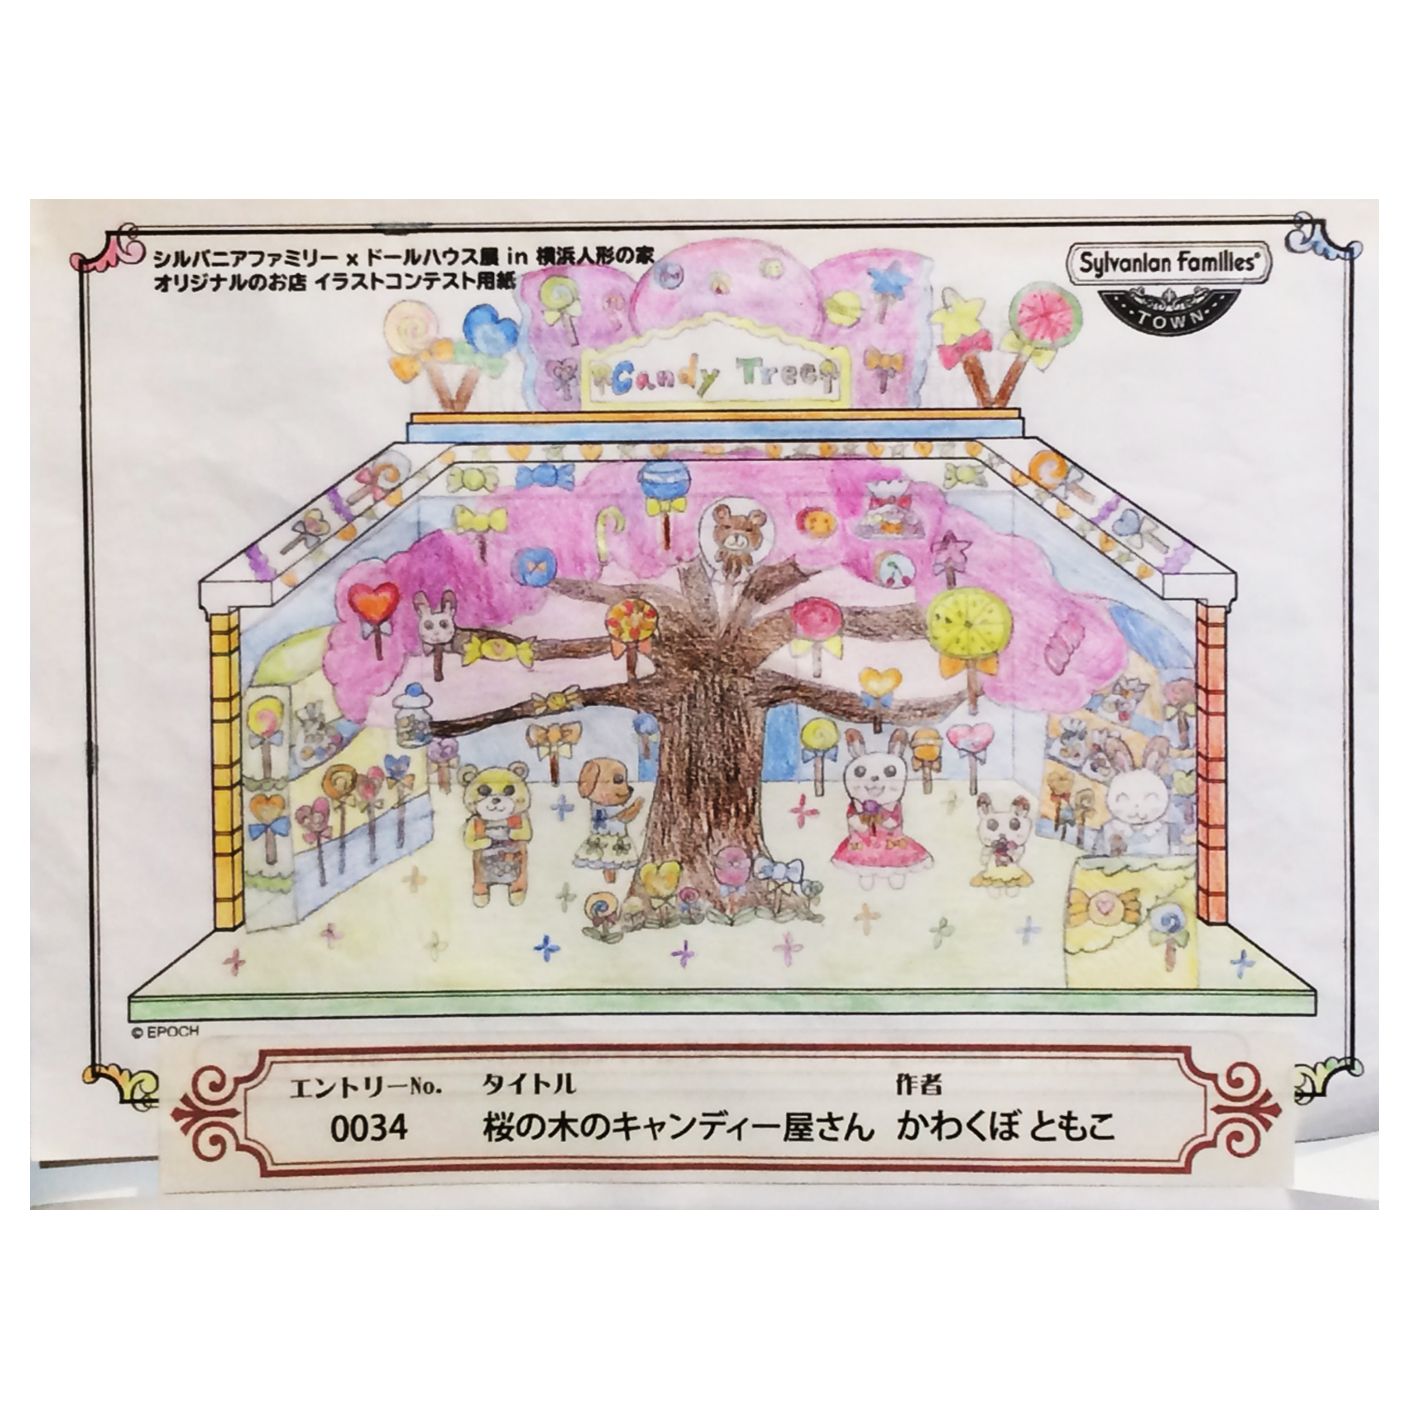 توییتر シルバニアファミリー 公式 در توییتر 横浜人形の家 にて開催された オリジナルのお店コンテスト こどもの部 にて 最優秀賞を受賞したかわくぼさんのイラストが ドールハウス作家さんにより 賞品として再現されました 桜の木が キャンディー屋さん